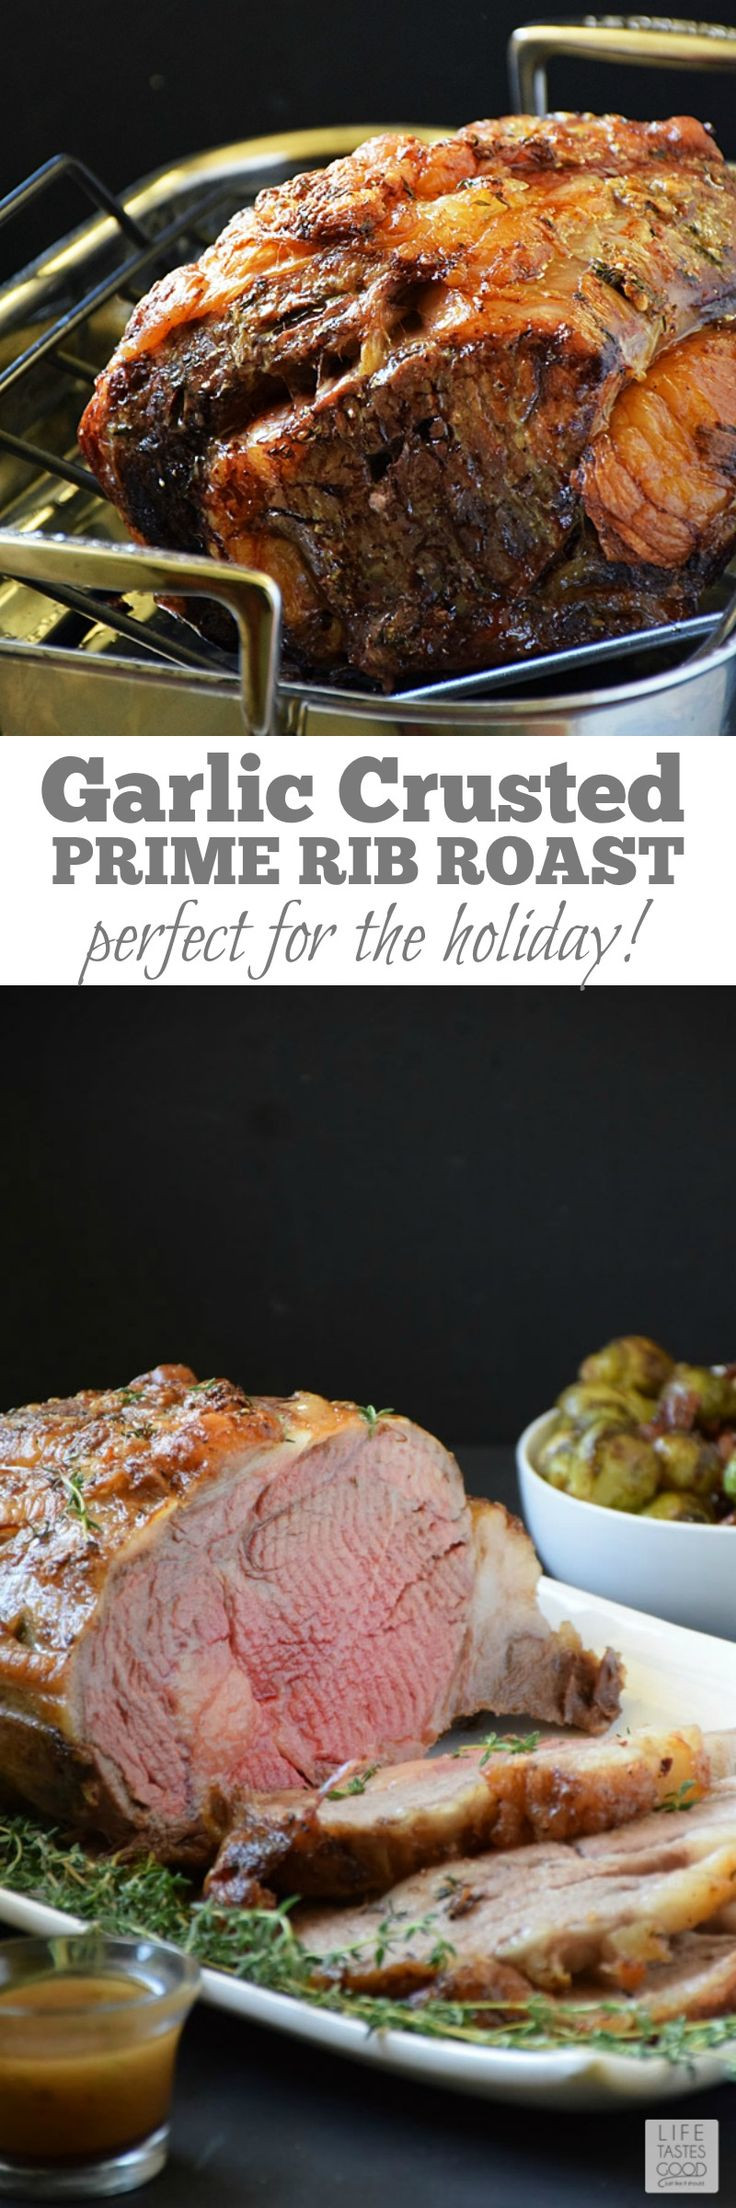 Prime Rib Sides For Christmas Dinner
 Best 25 Xmas dinner ideas ideas on Pinterest